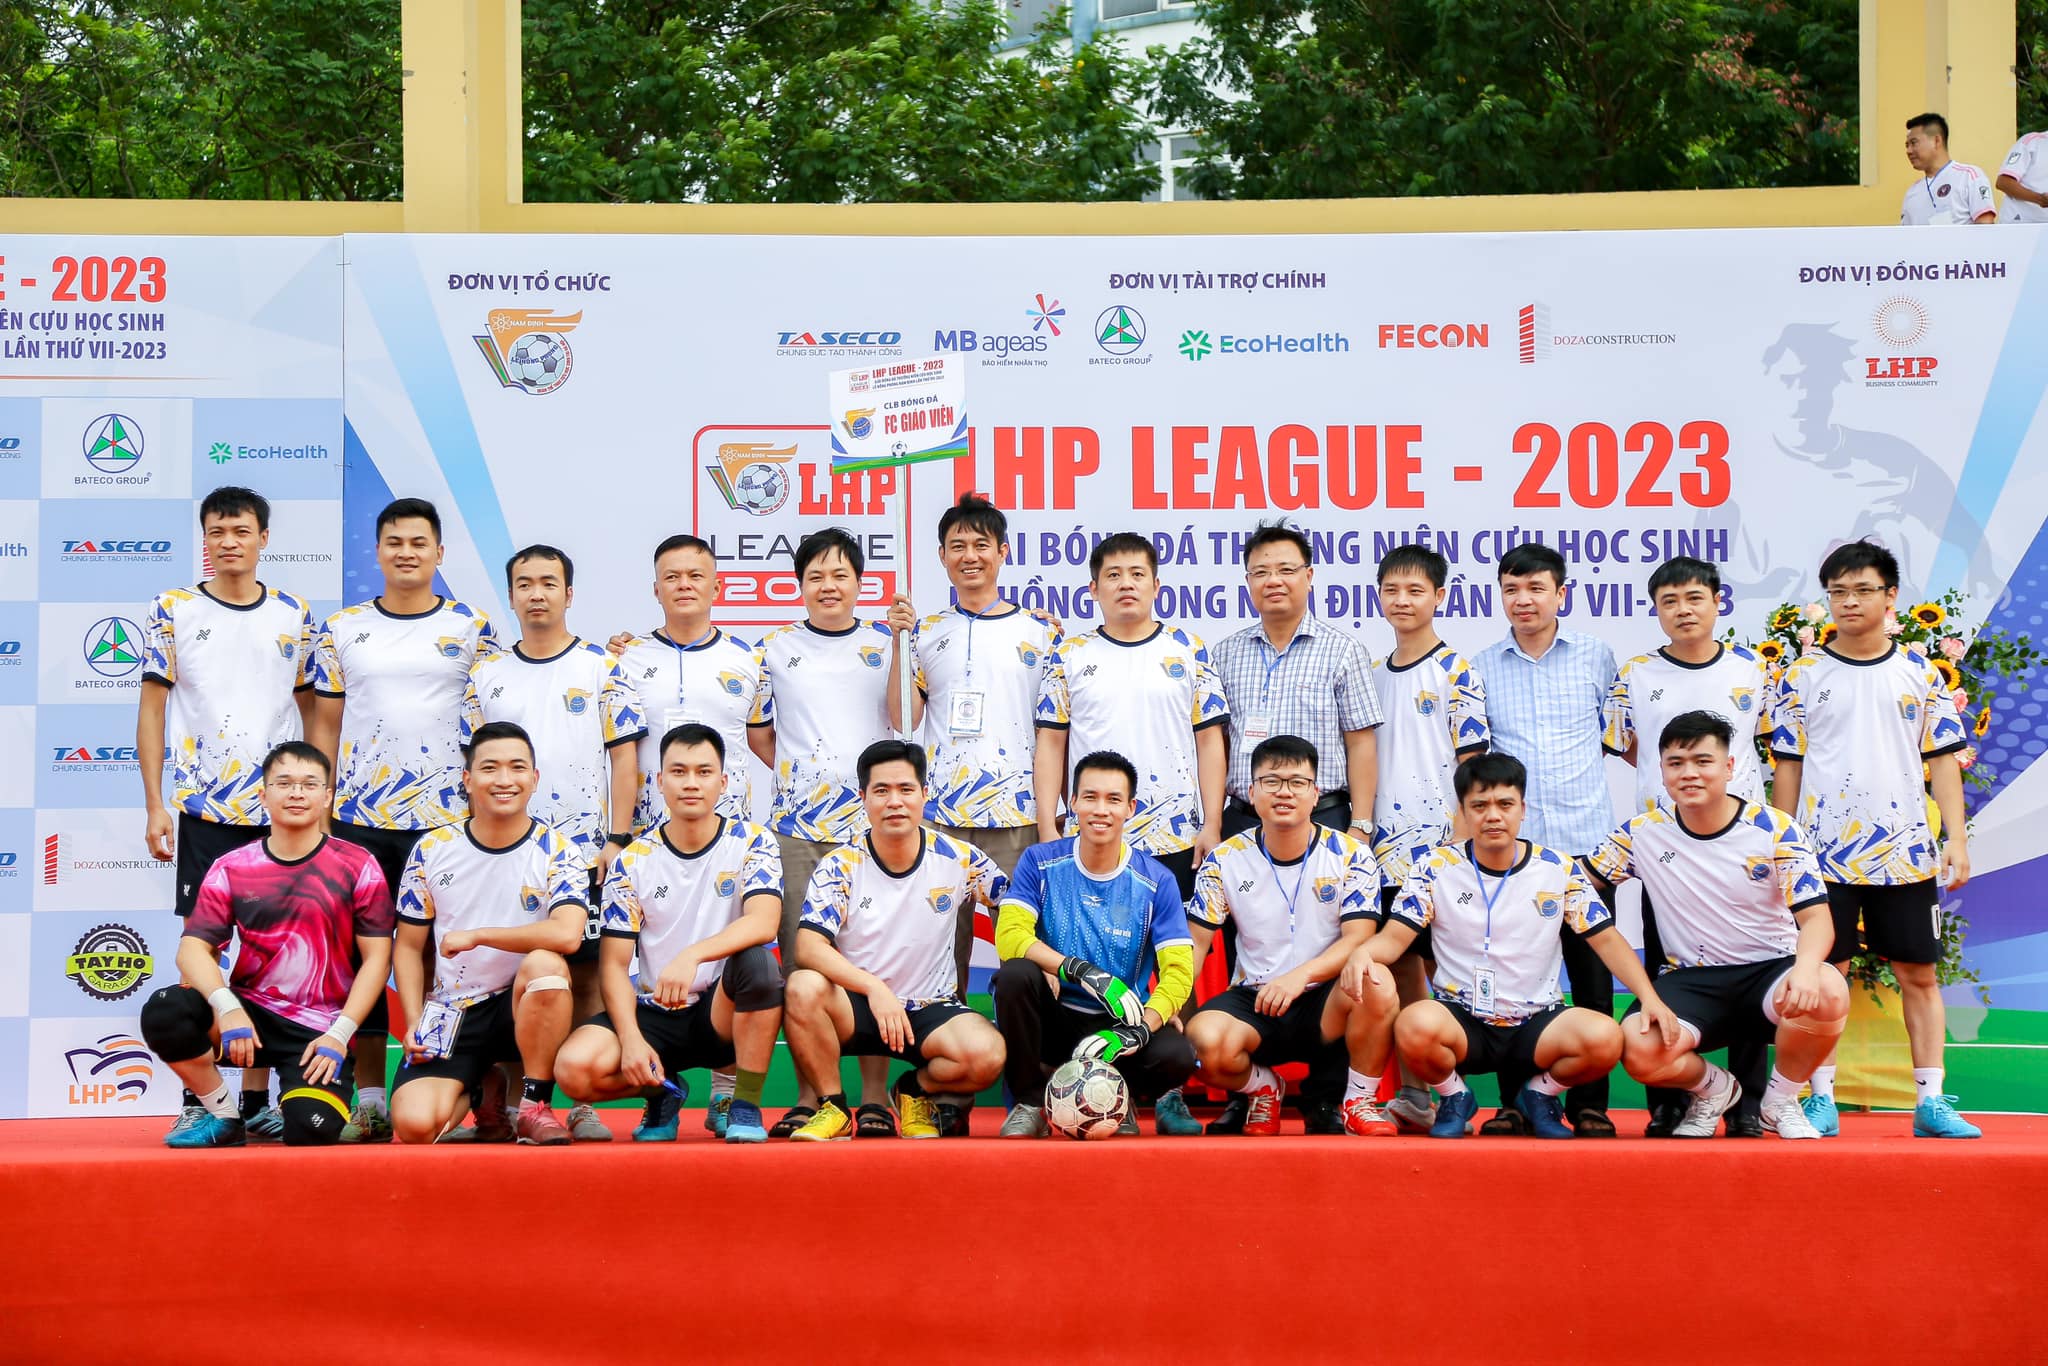 Trường THPT chuyên Lê Hồng Phong tham dự Lễ Khai mạc và thi đấu giải bóng đá thường niên cựu học sinh trường THPT chuyên Lê Hồng Phong - Nam Định lần thứ VII - 2023